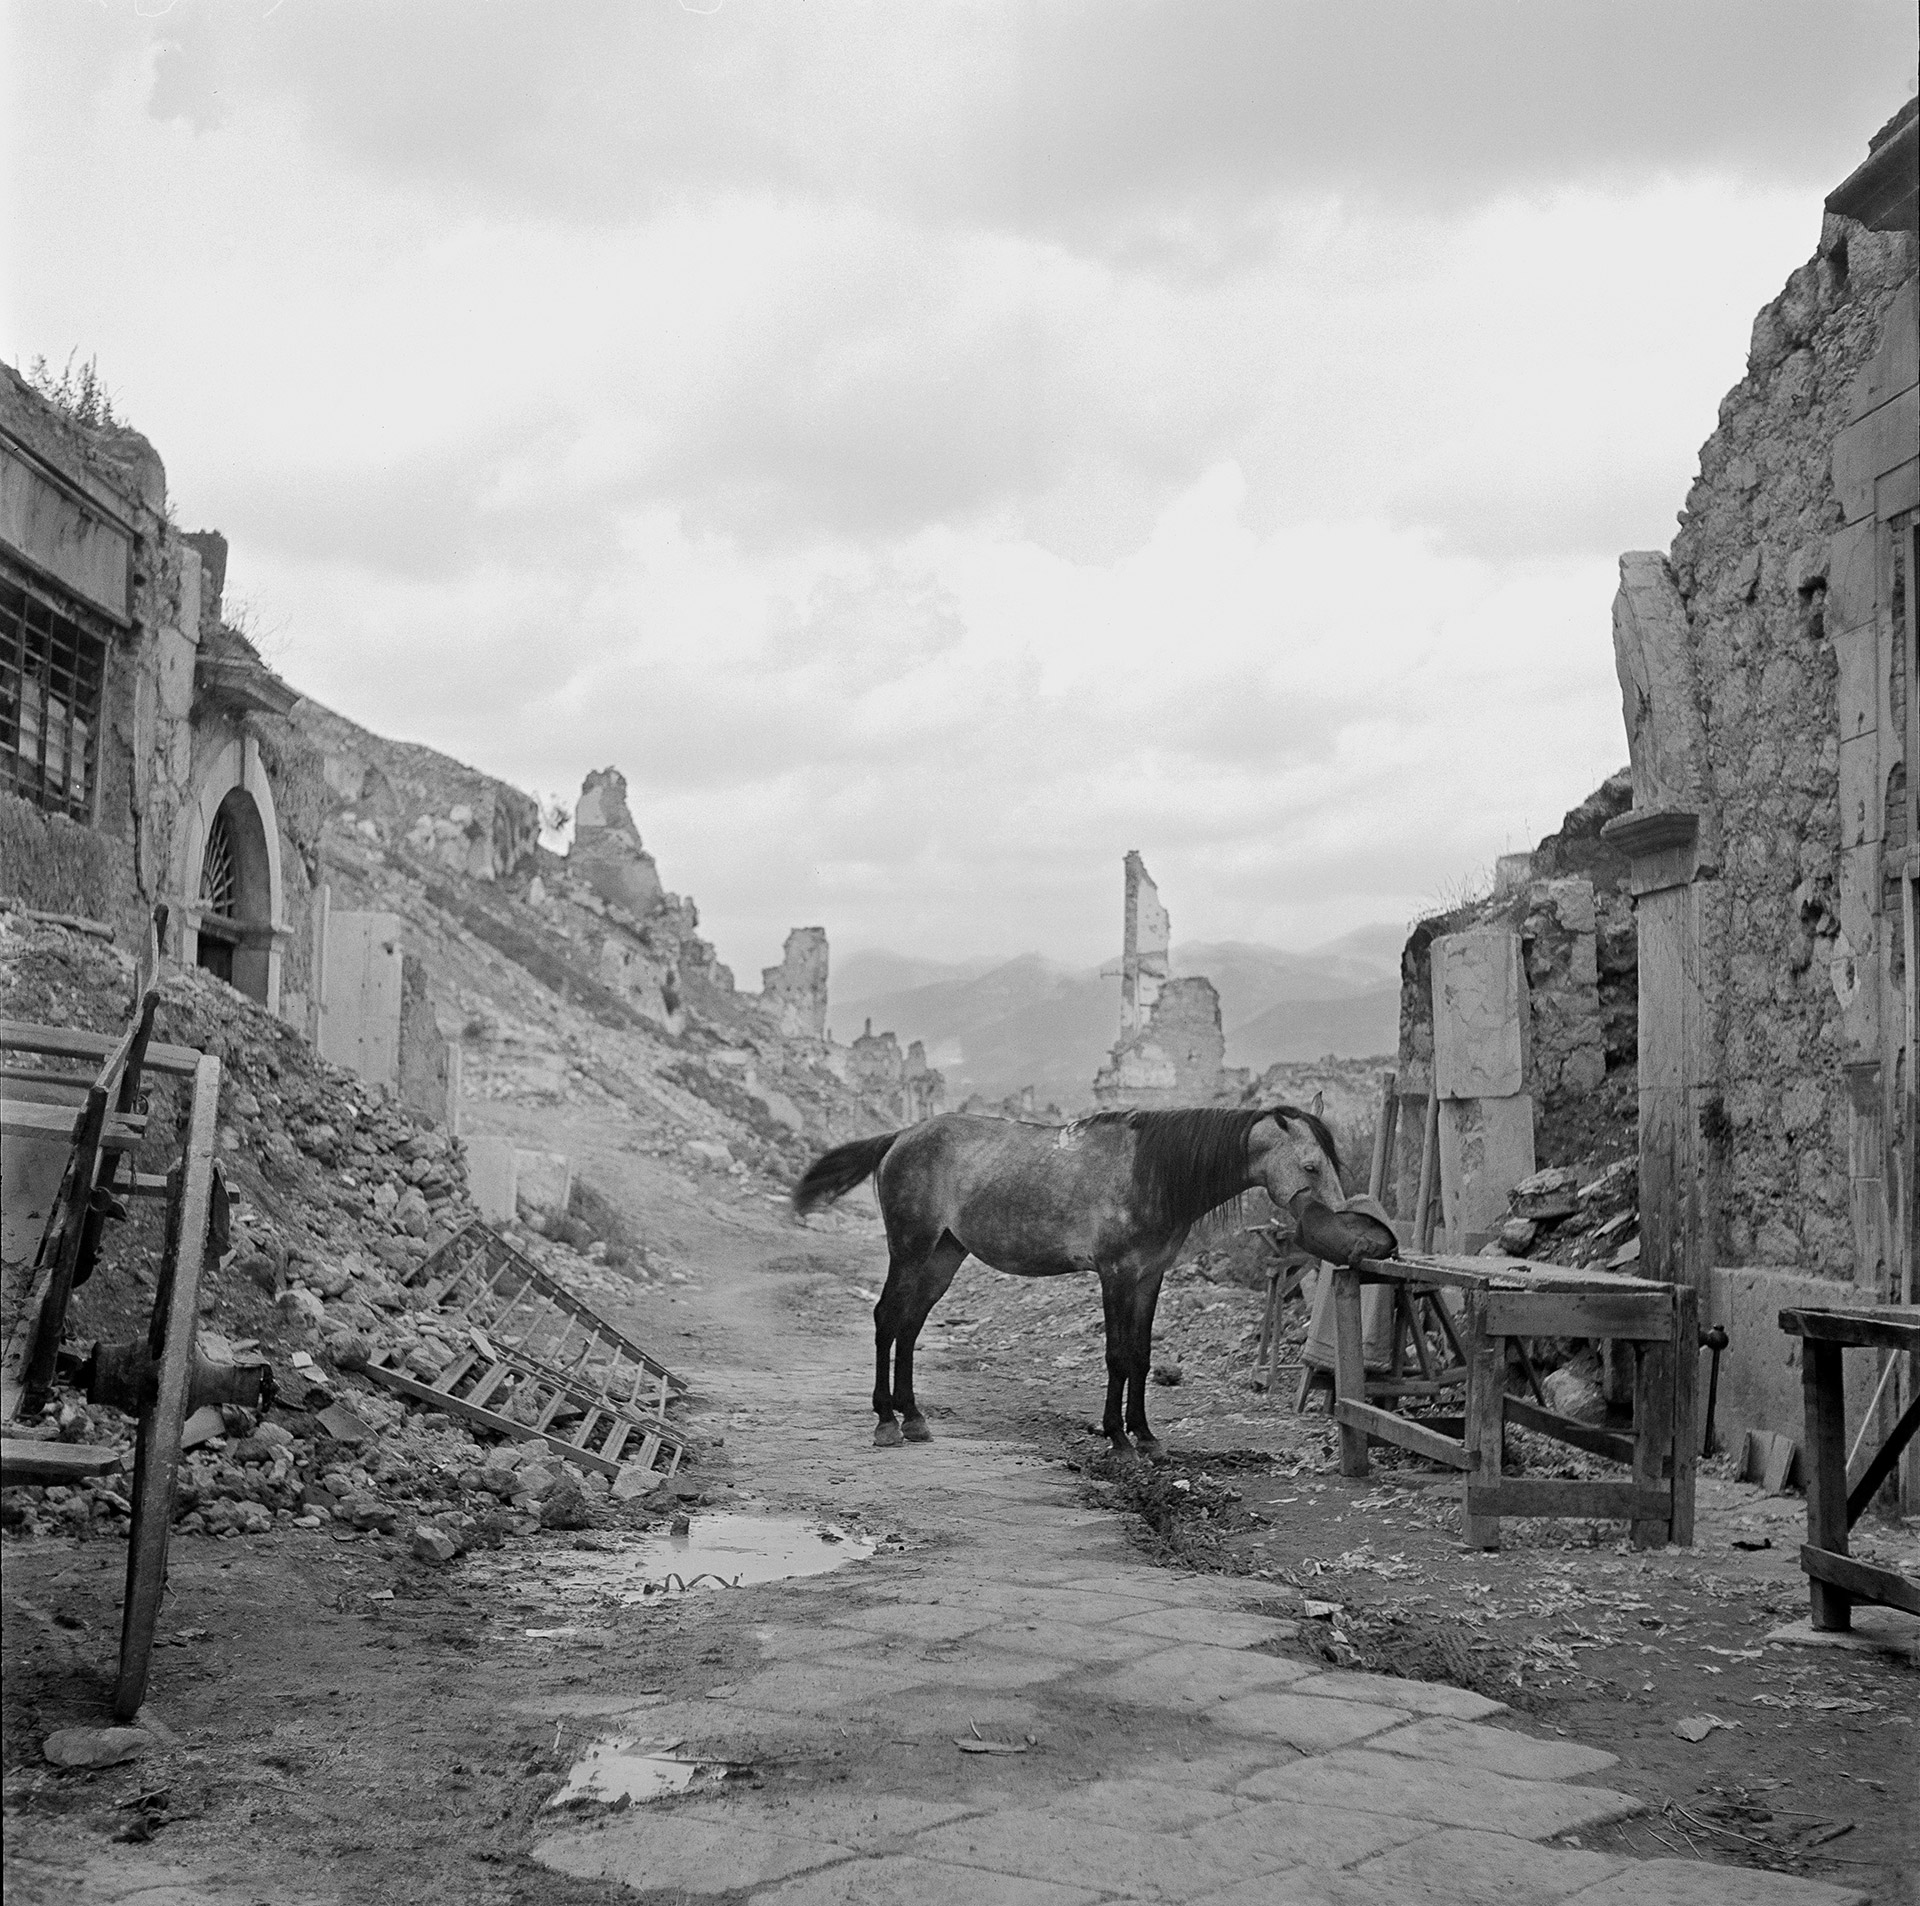 Horse Eating Hay, Ruins of Cassino, Italy, 1946 by Tony Vaccaro.